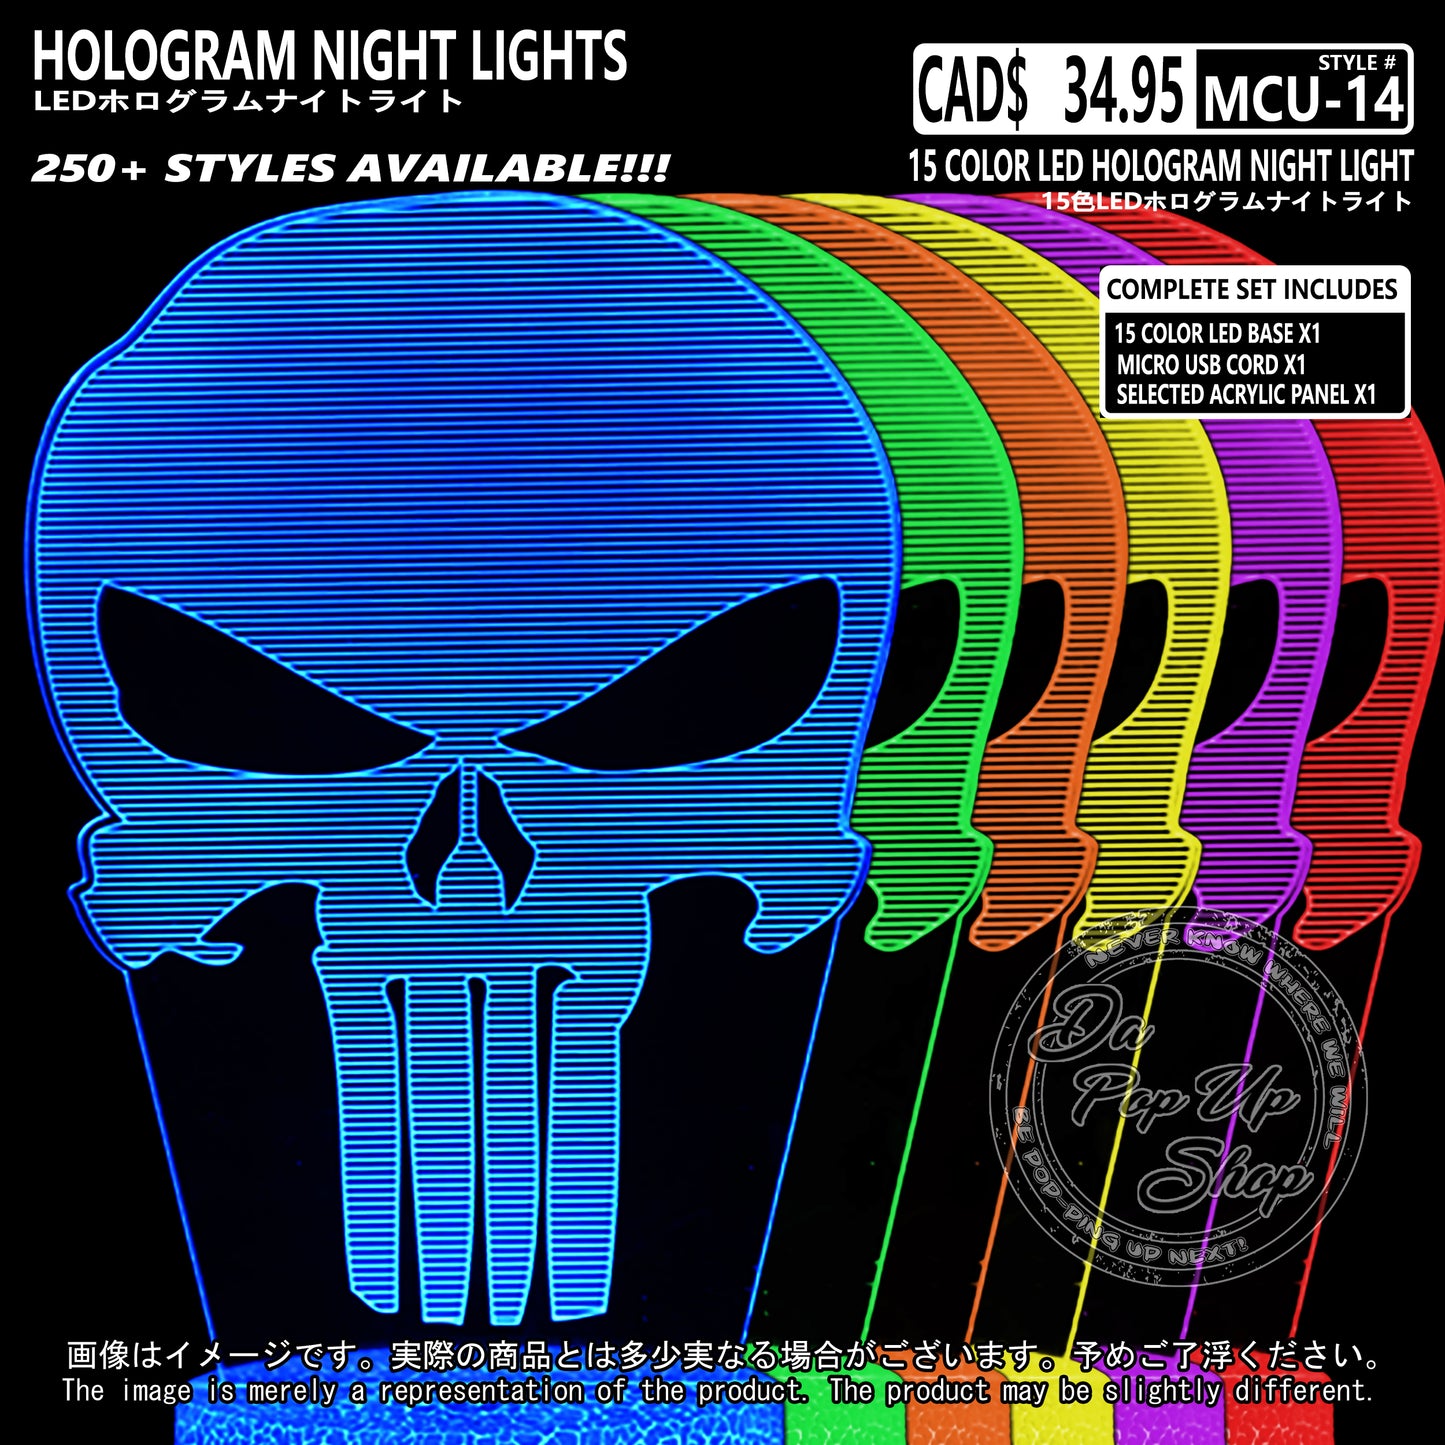 (MCU-14) MCU Marvel Cinematic Universal Hologram LED Night Light